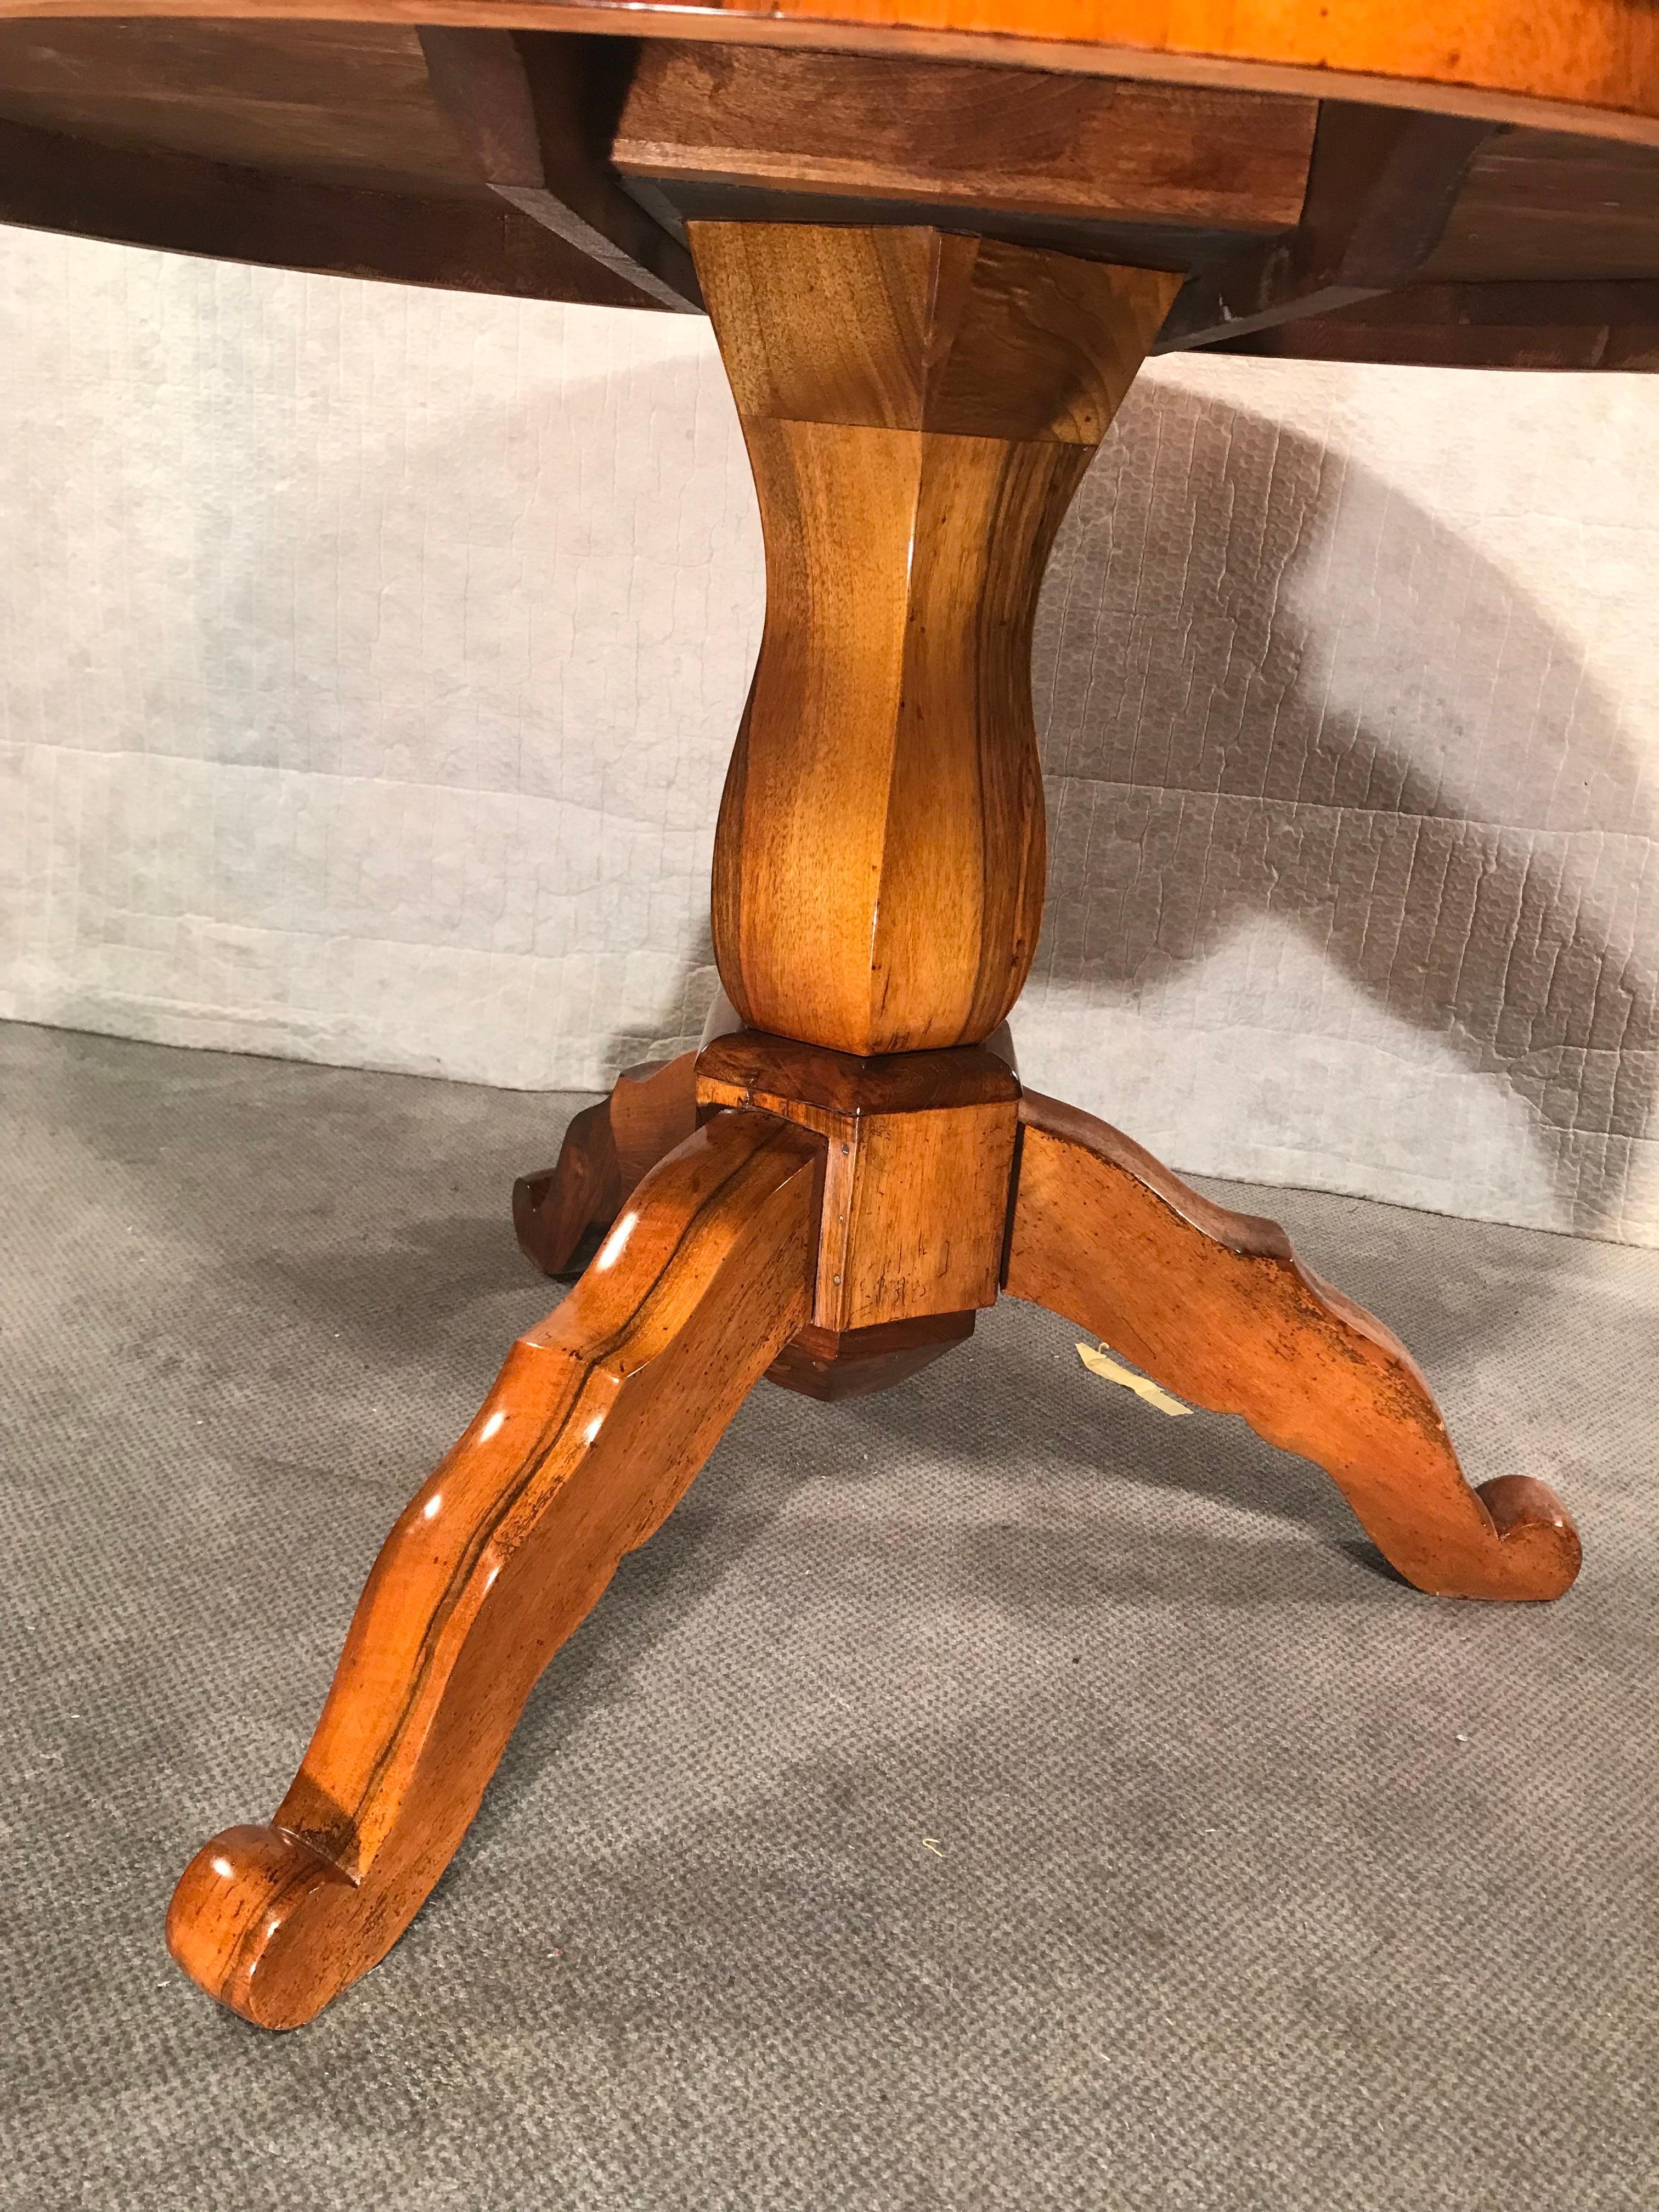 Dieser einzigartige Biedermeier-Tisch ist wirklich ein Meisterwerk. Seine Besonderheit ist die schöne Maserung des Nussbaumfurniers auf der Platte, die elegant von einem Dreibeinfuß und einer zentralen Säule getragen wird. Die Handwerkskunst und die